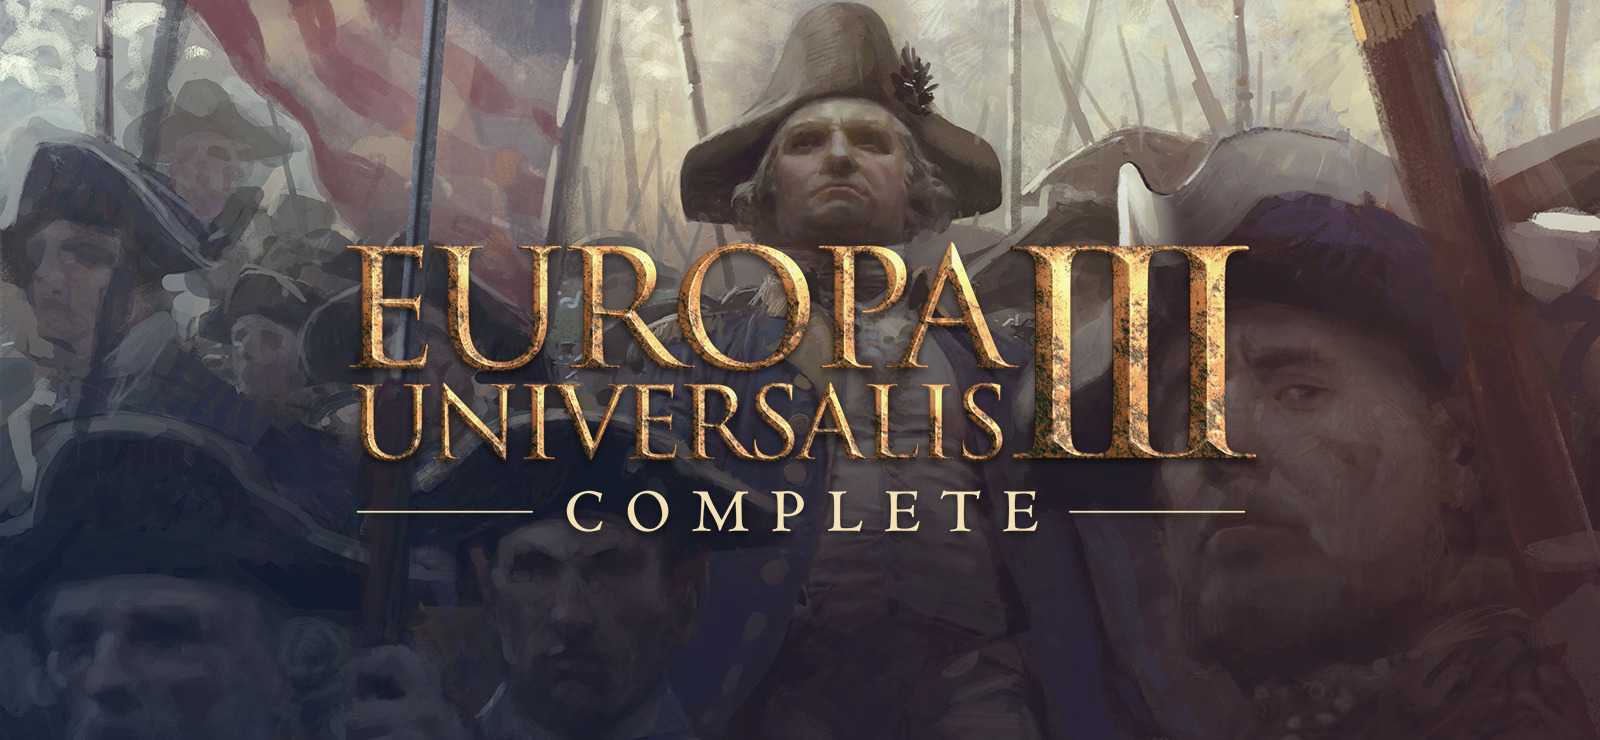 europa universalis 3 download mac free